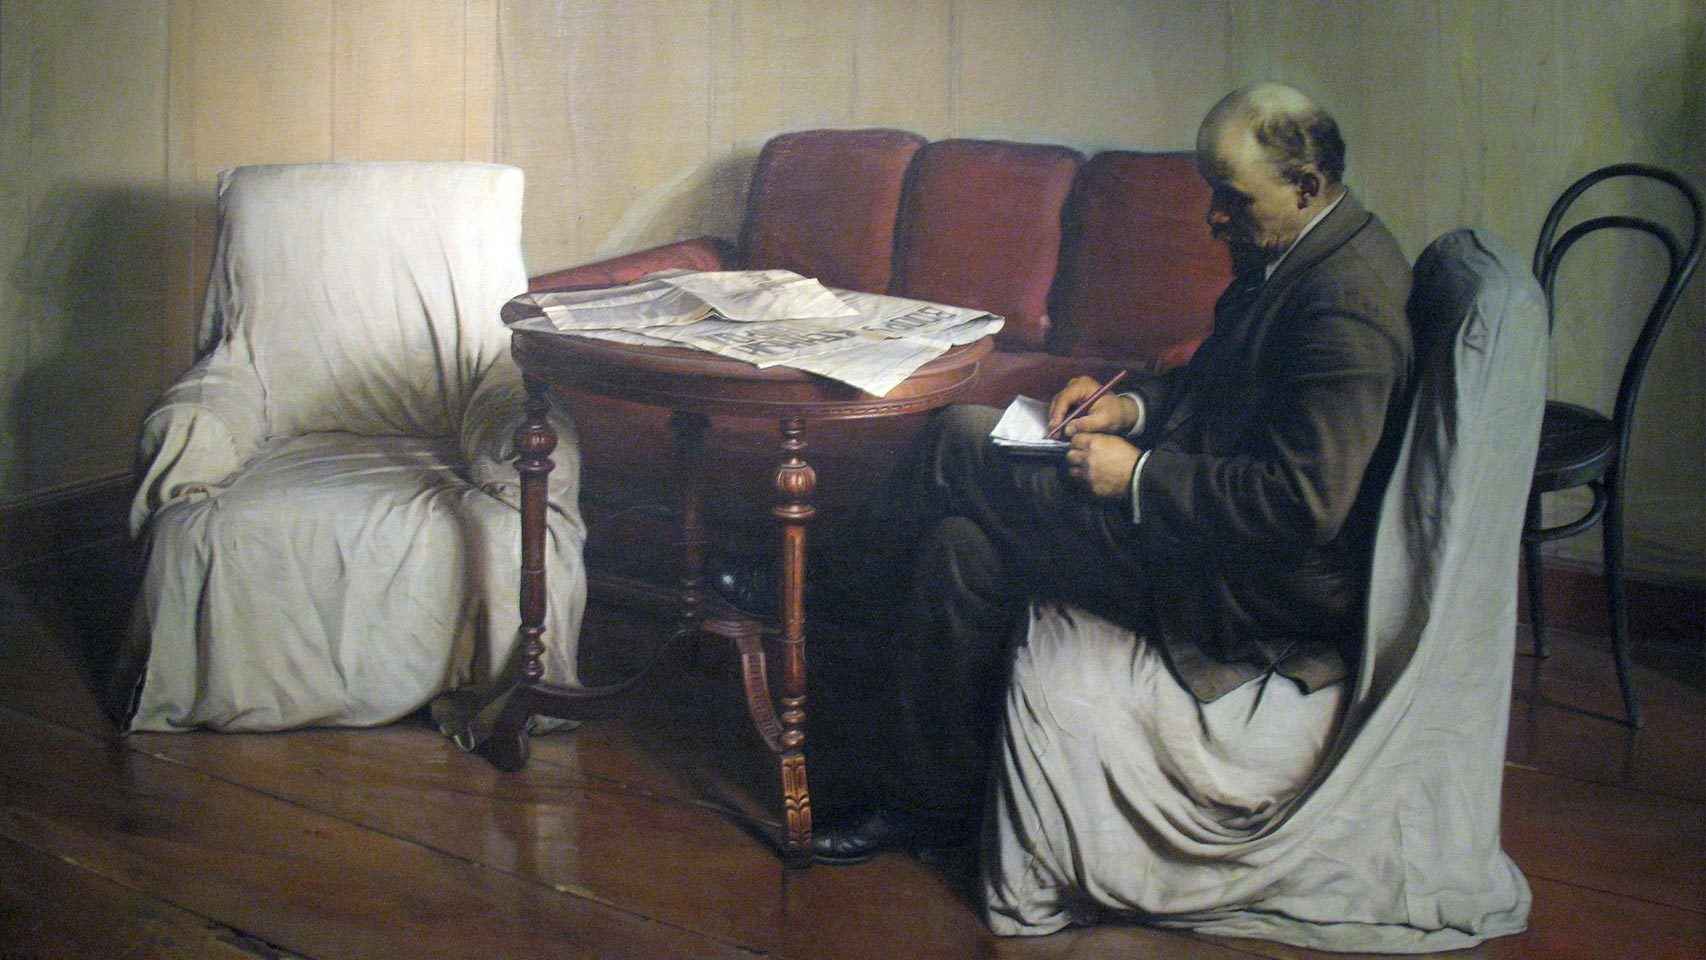 Retrato de Lenin redactando una proclama en su habitación del Instituto Smolny, obra de Isaak Brodsky.